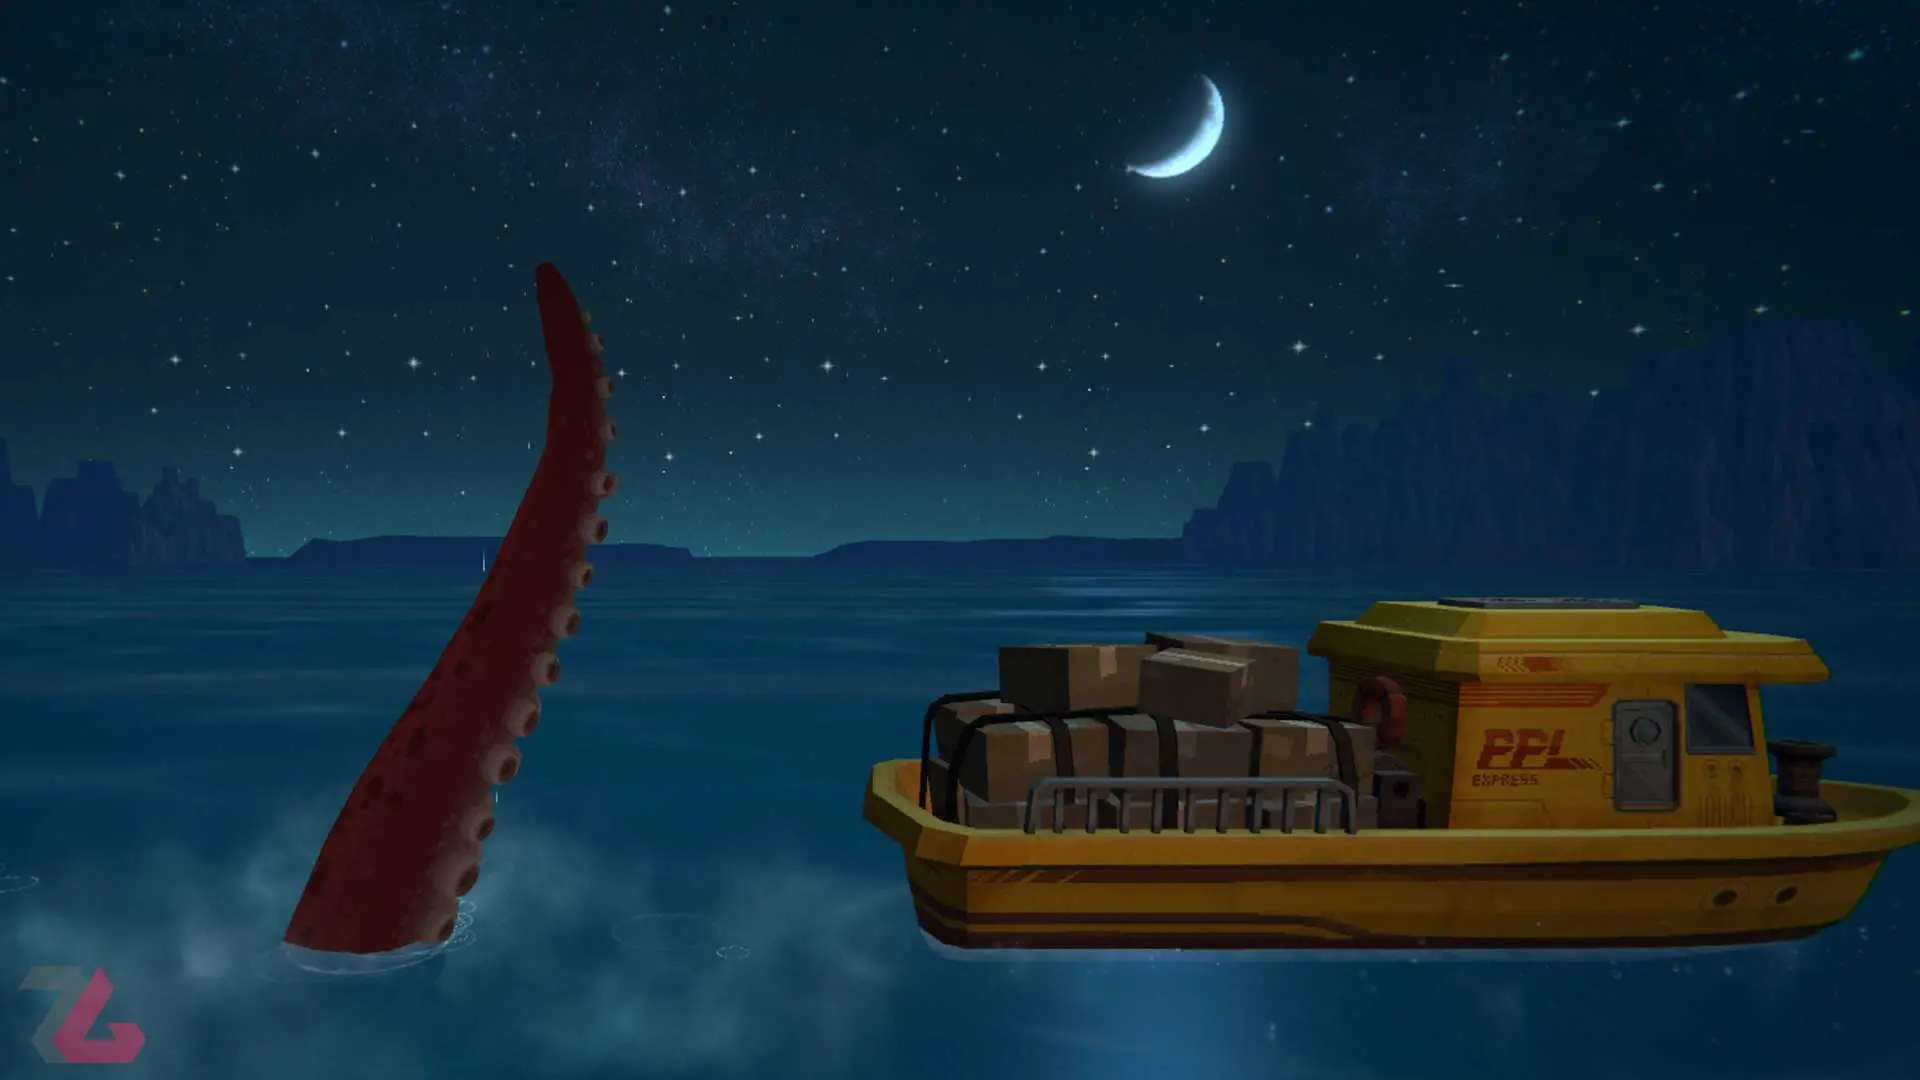 پای اختاپوس عظیم الجثه در شب مهتابی کنار قایق در بازی Dave the Diver